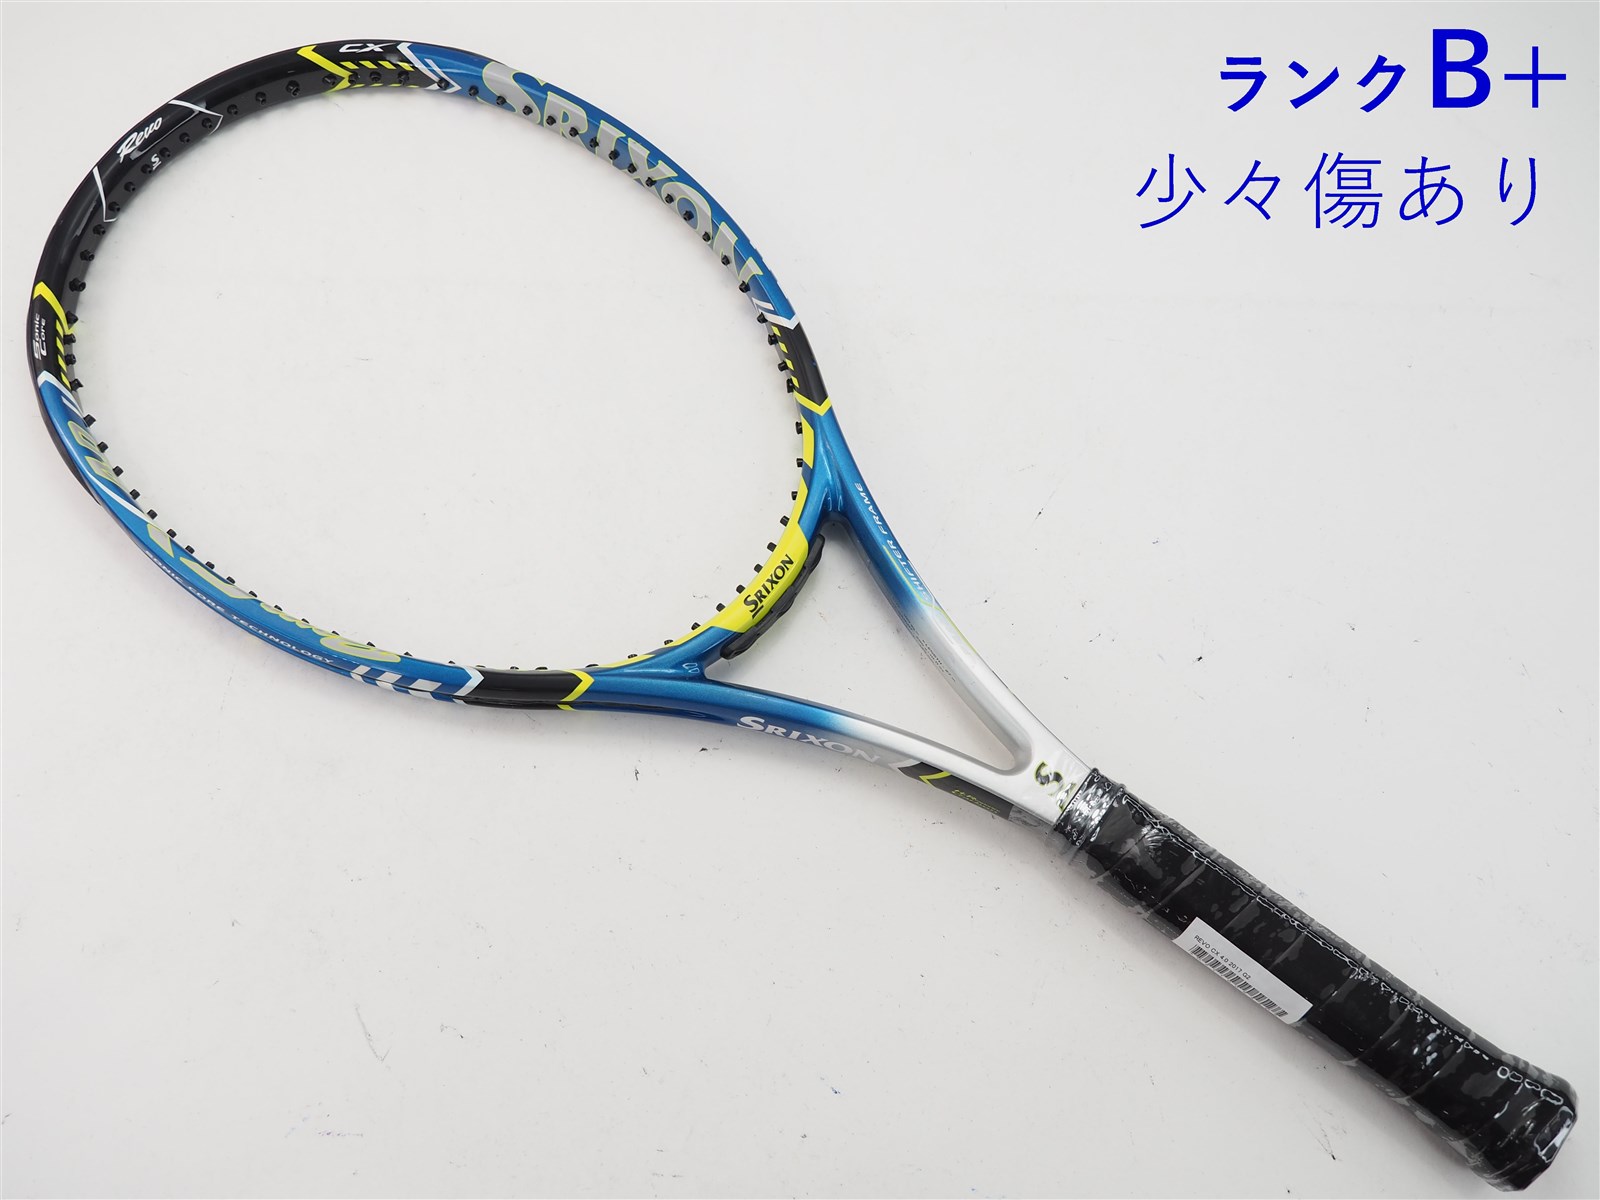 293ｇ張り上げガット状態テニスラケット スリクソン レヴォ エックス 2.0 ライト 2013年モデル (G2)SRIXON REVO X 2.0 LITE 2013